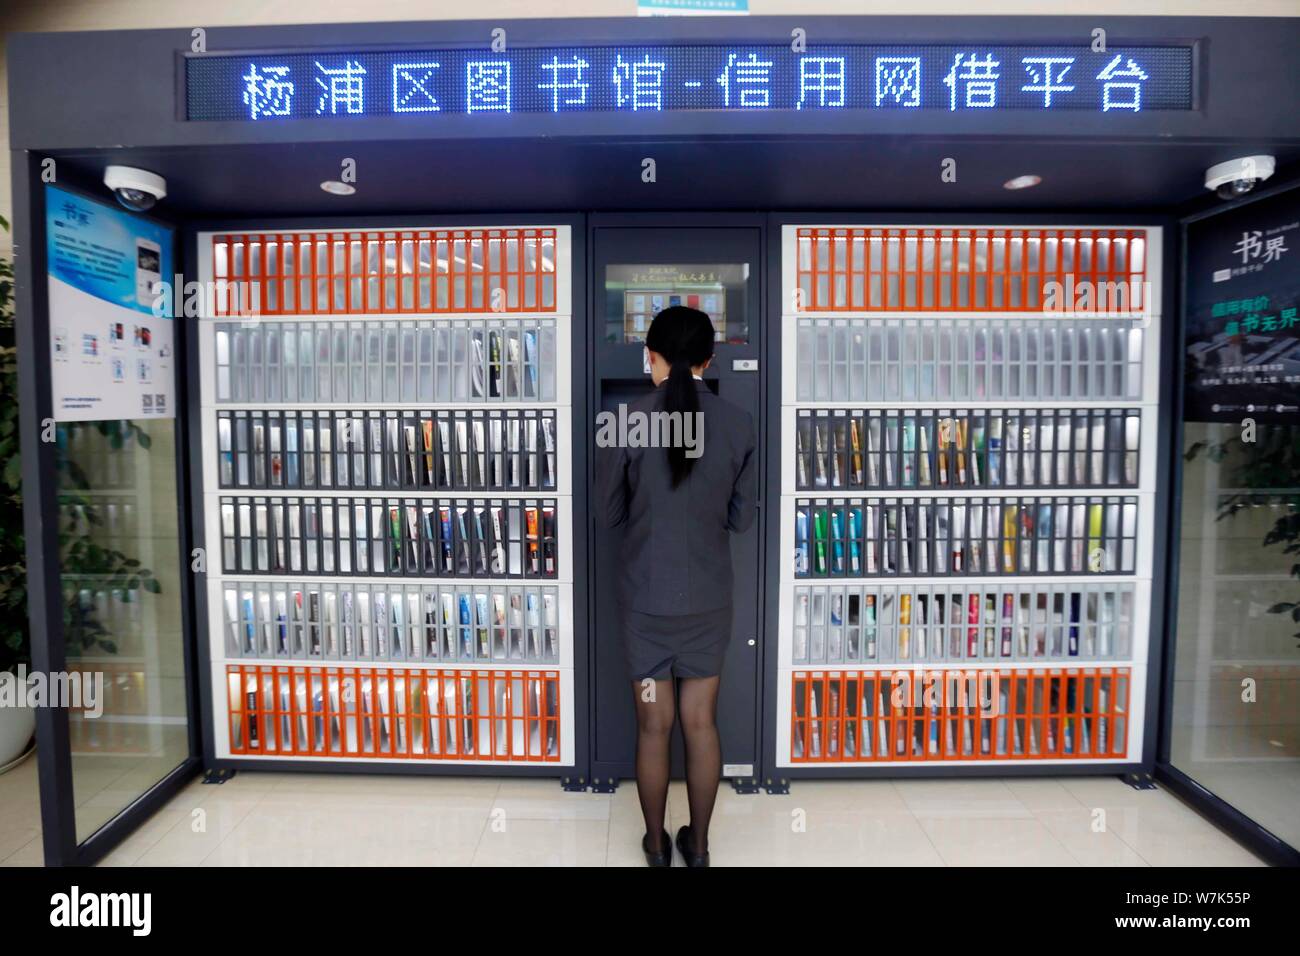 Ein Bürger verwendet, um die Maschine zu Bücher kostenlos vor einem gemeinsamen Bücherregal betrieben von zhima Credit von Alibaba Ant Finanzielle, Shanghai Yangpu ausleihen Stockfoto